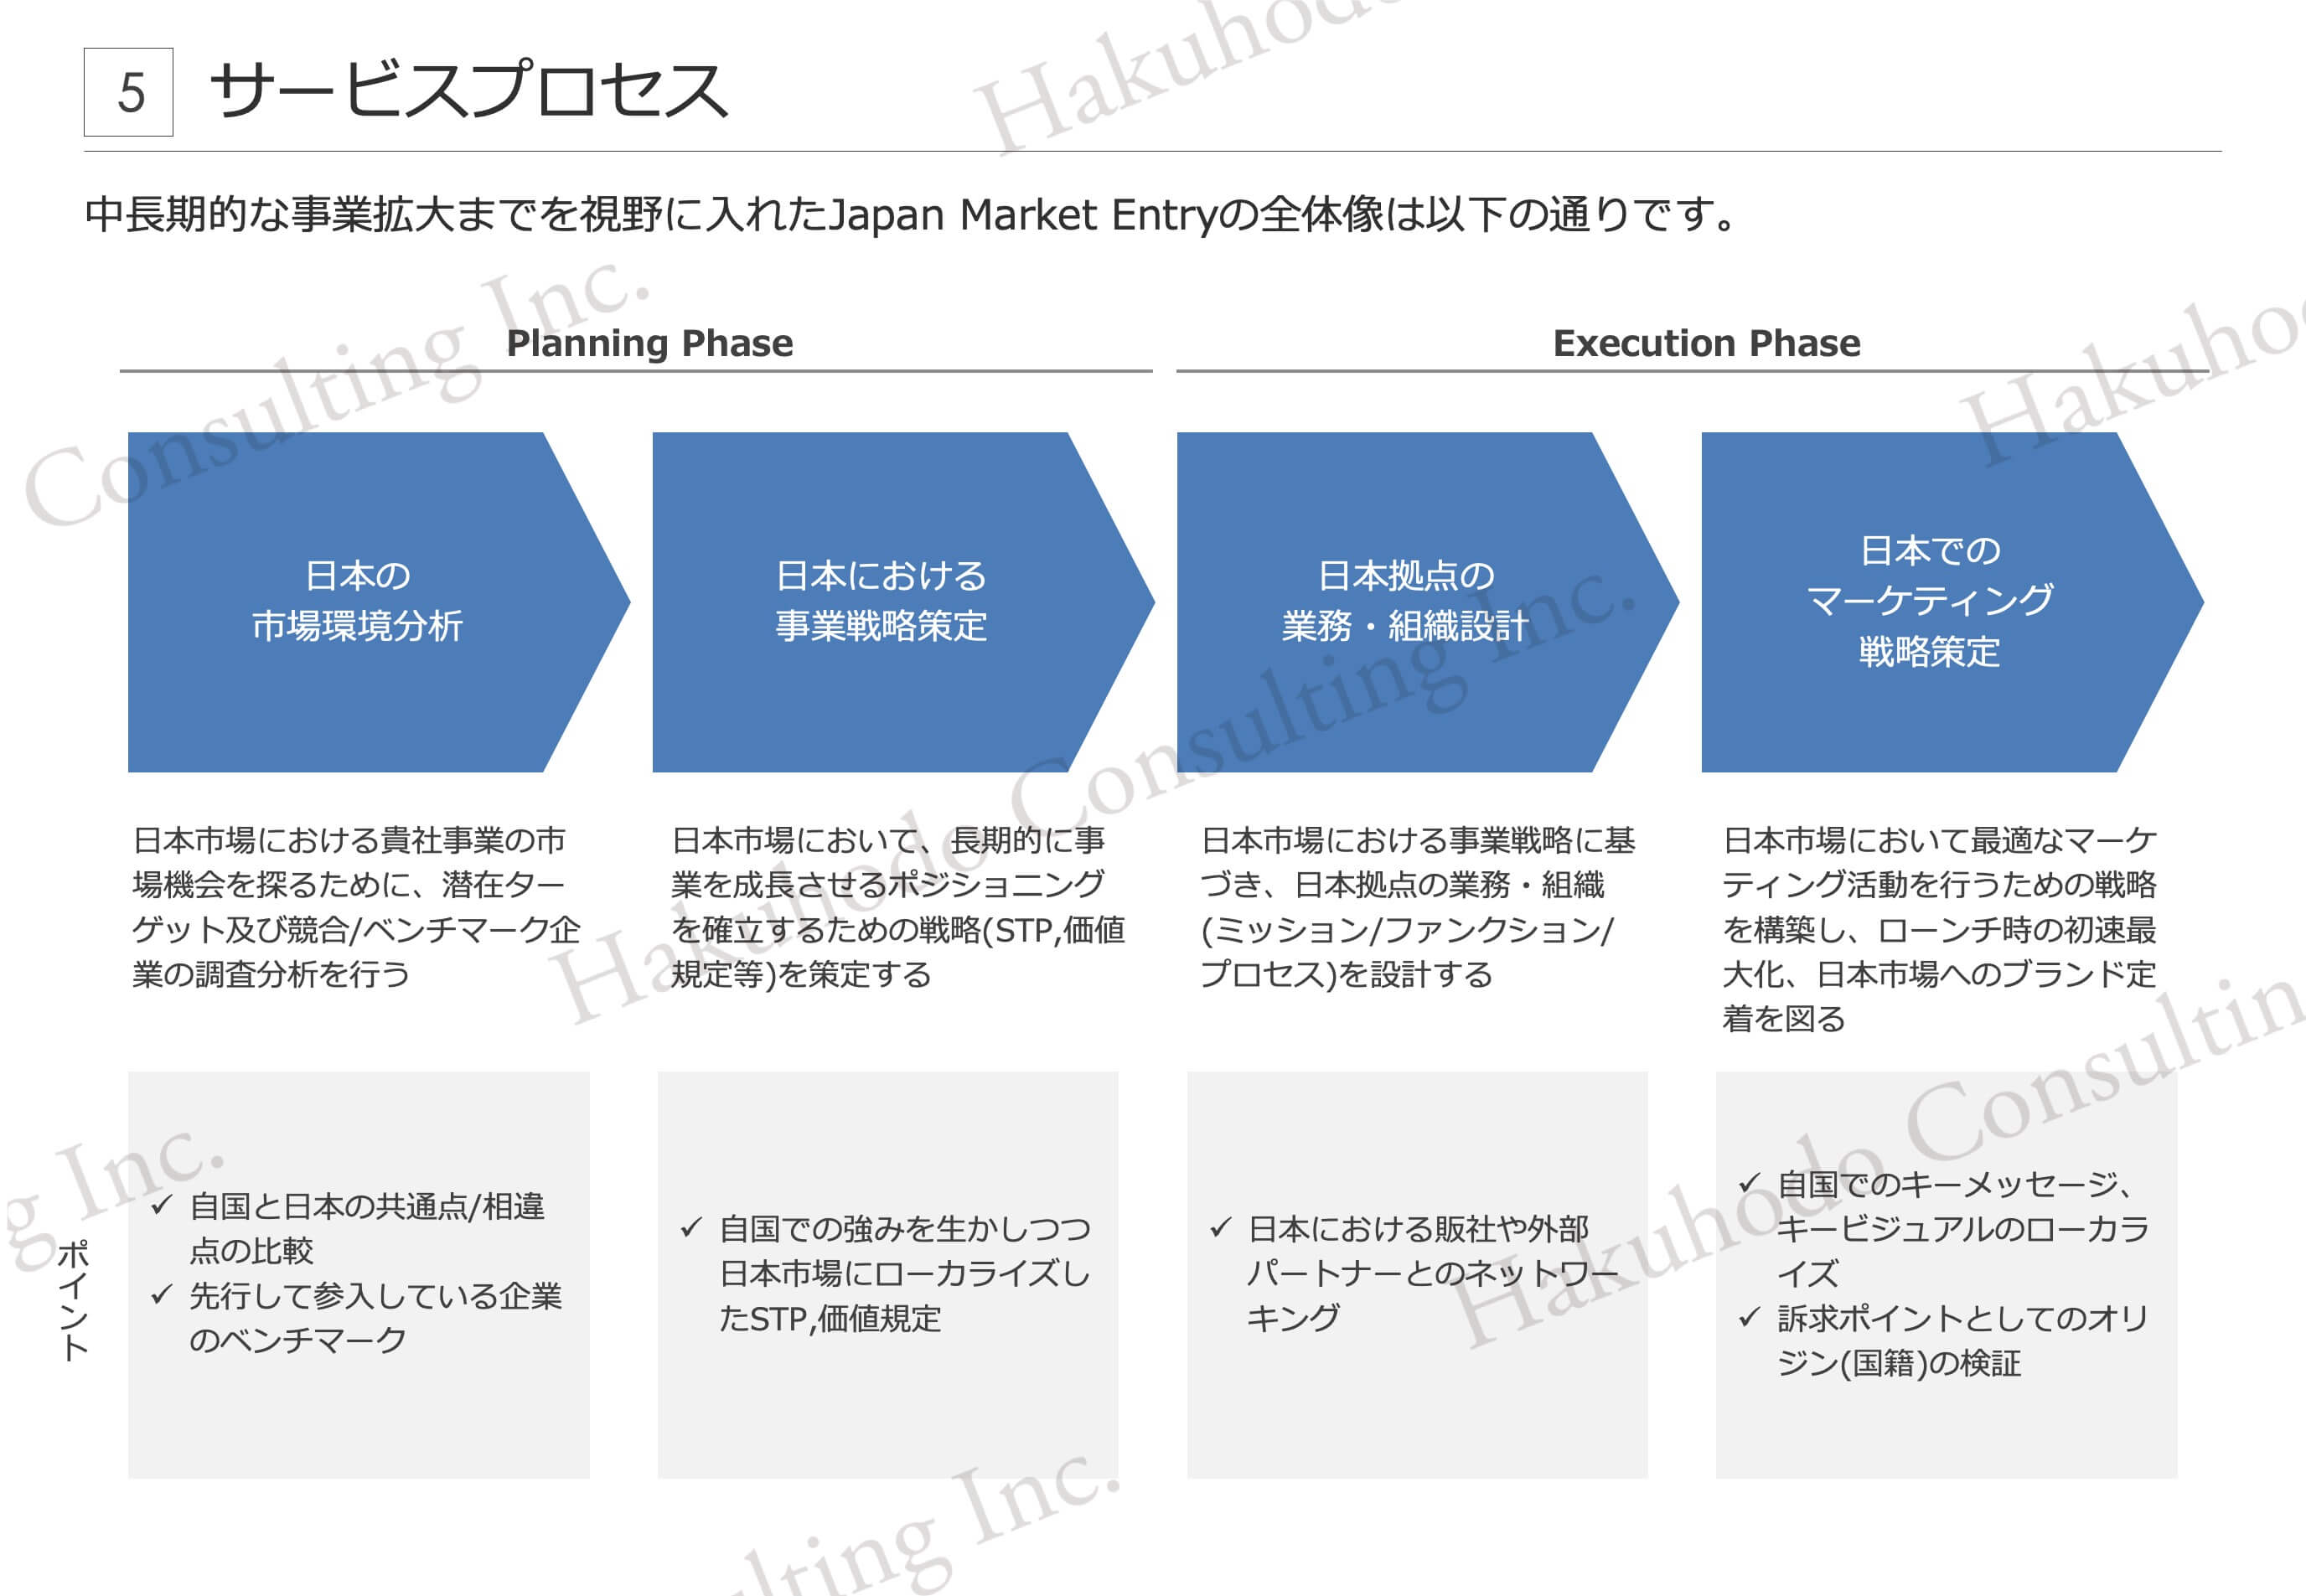 中⻑期的な事業拡大までを視野に入れたJapan Market Entryの全体像は以下の通りです。